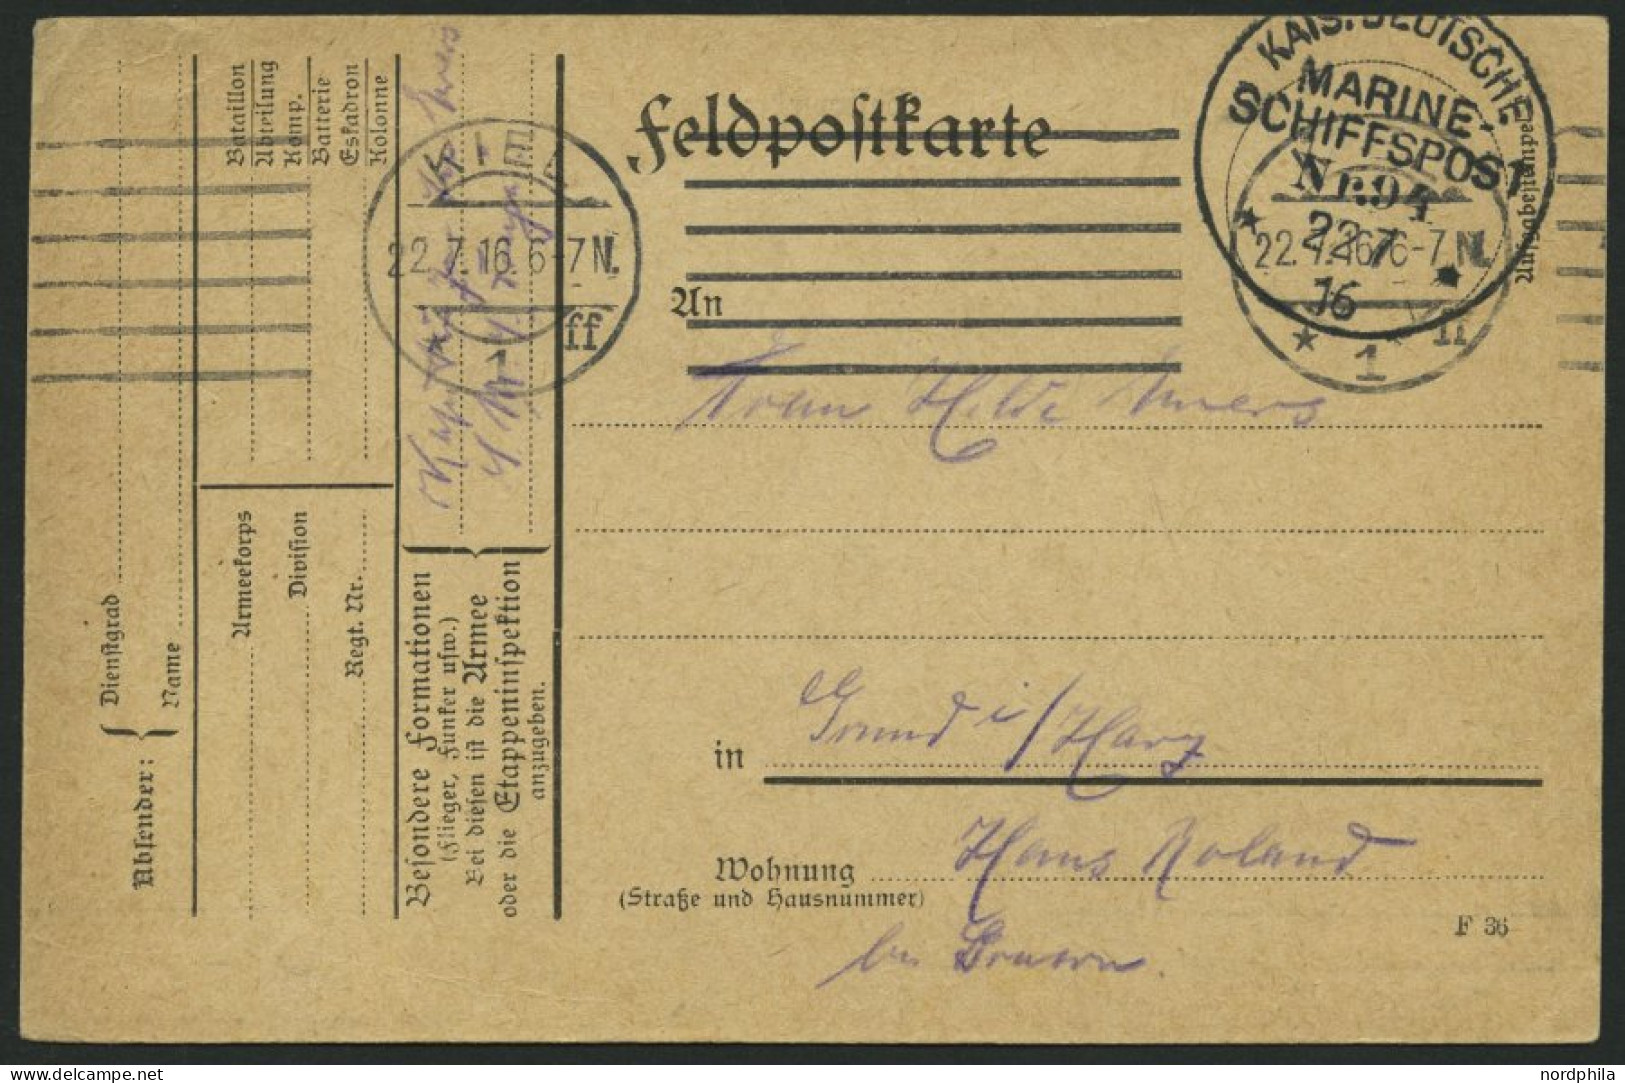 MSP VON 1914 - 1918 94 (Großer Kreuzer FREYA), 22.7.1916, Feldpostkarte Von Bord Der Freya, Pracht - Schiffahrt